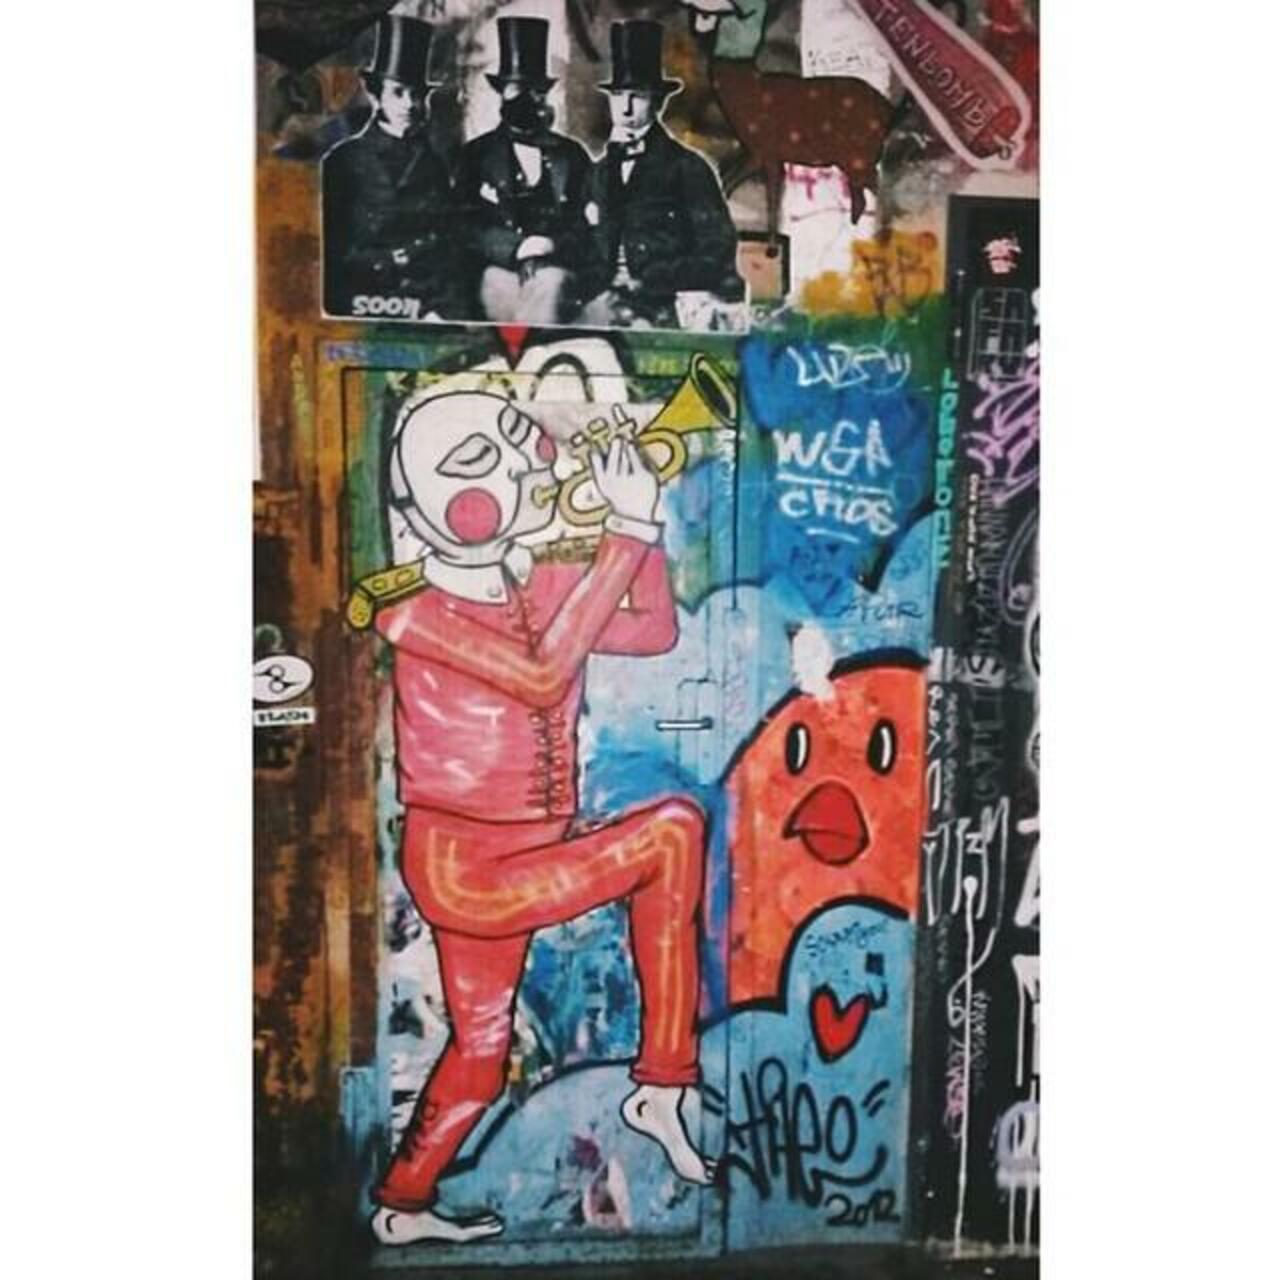 ✌️#soon #vsco #vscocam #vscophile #streetart #streetartberlin #berlin #graffiti #graffitiartist #mural #wheatpaste … http://t.co/DVU87xfMik